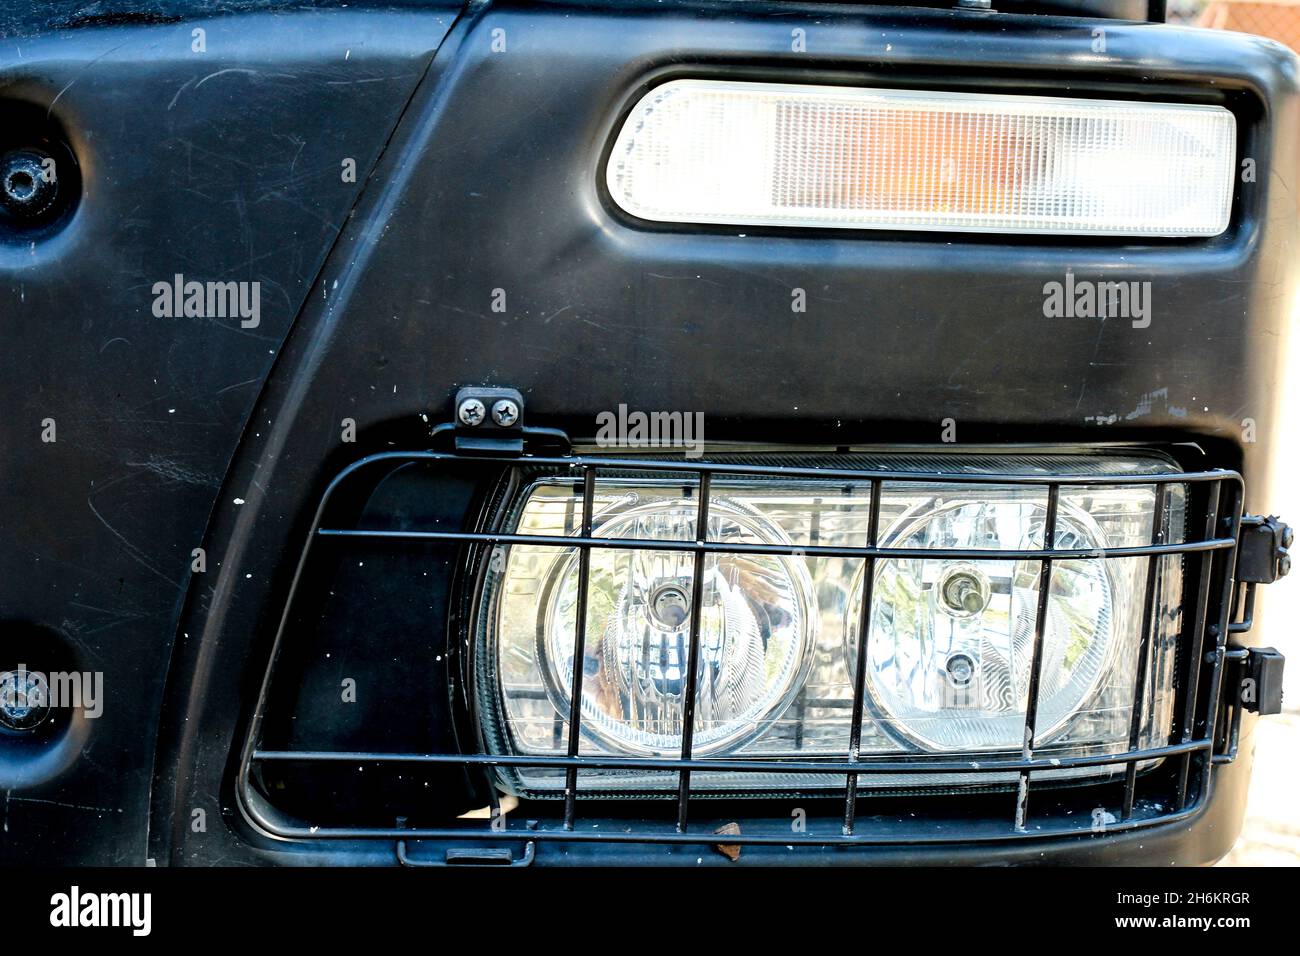 Scheinwerfer von übergroßen Lastwagen und schwarzer Karosserie  Stockfotografie - Alamy